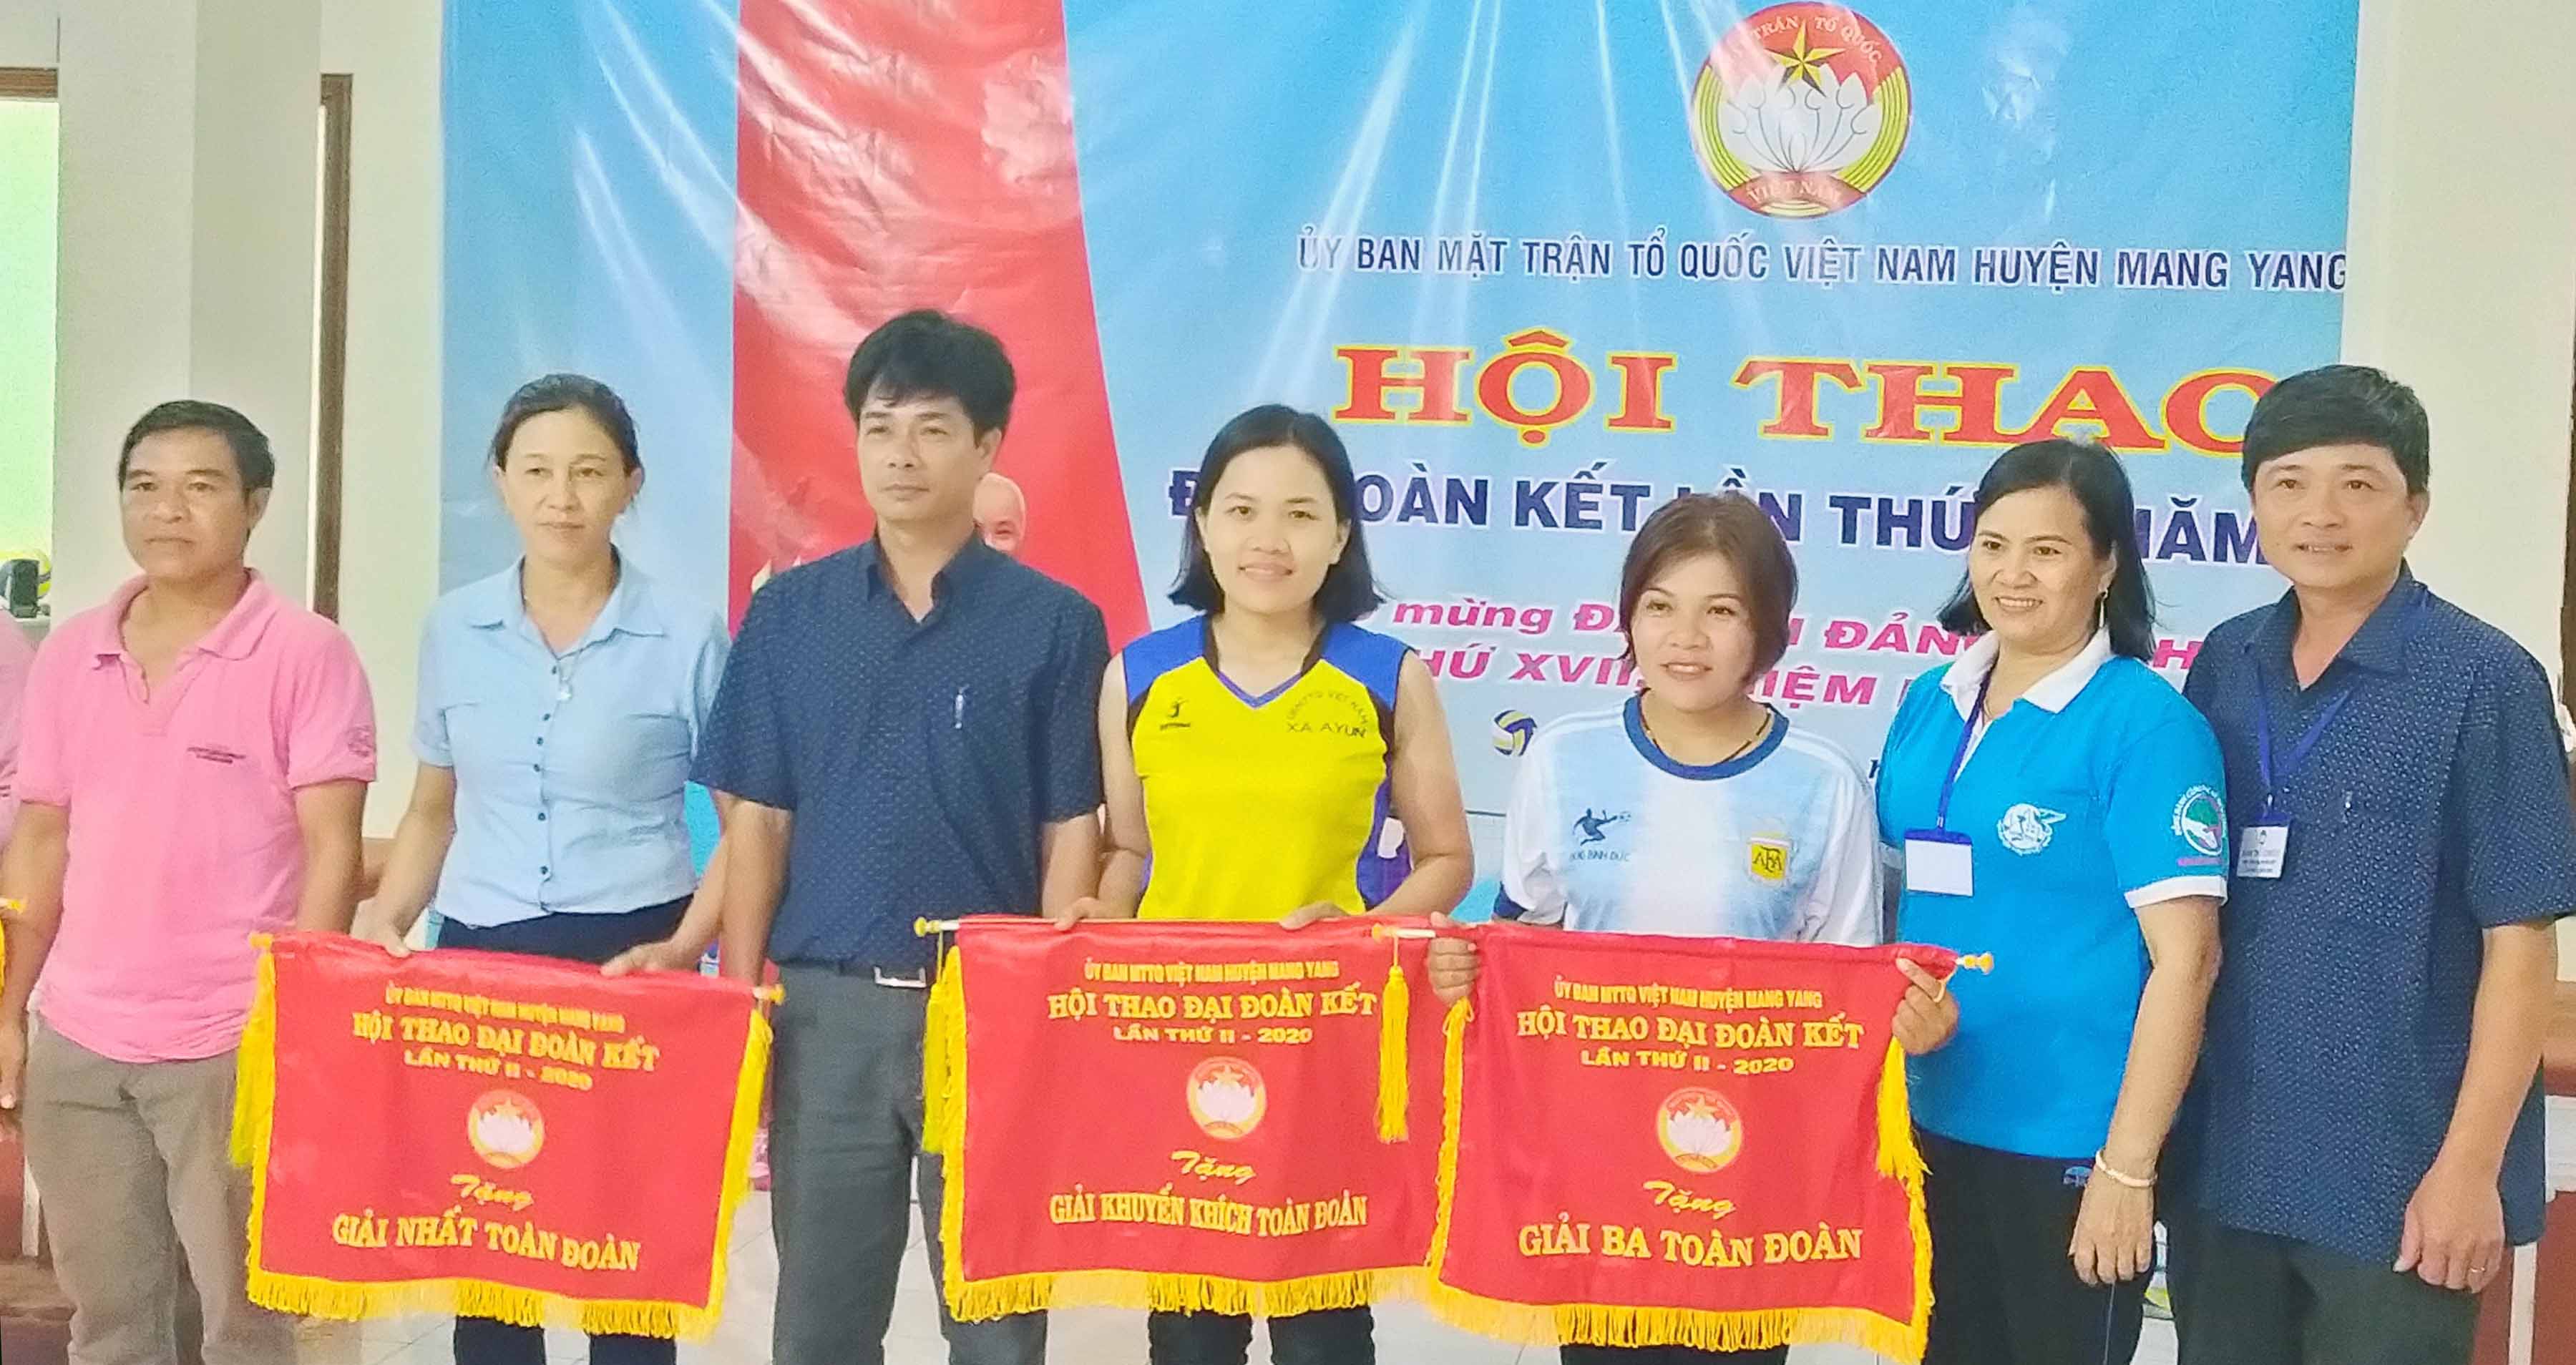 Tham gia Hội thao Đại đoàn kết huyện Mang Yang lần thứ II, năm 2020